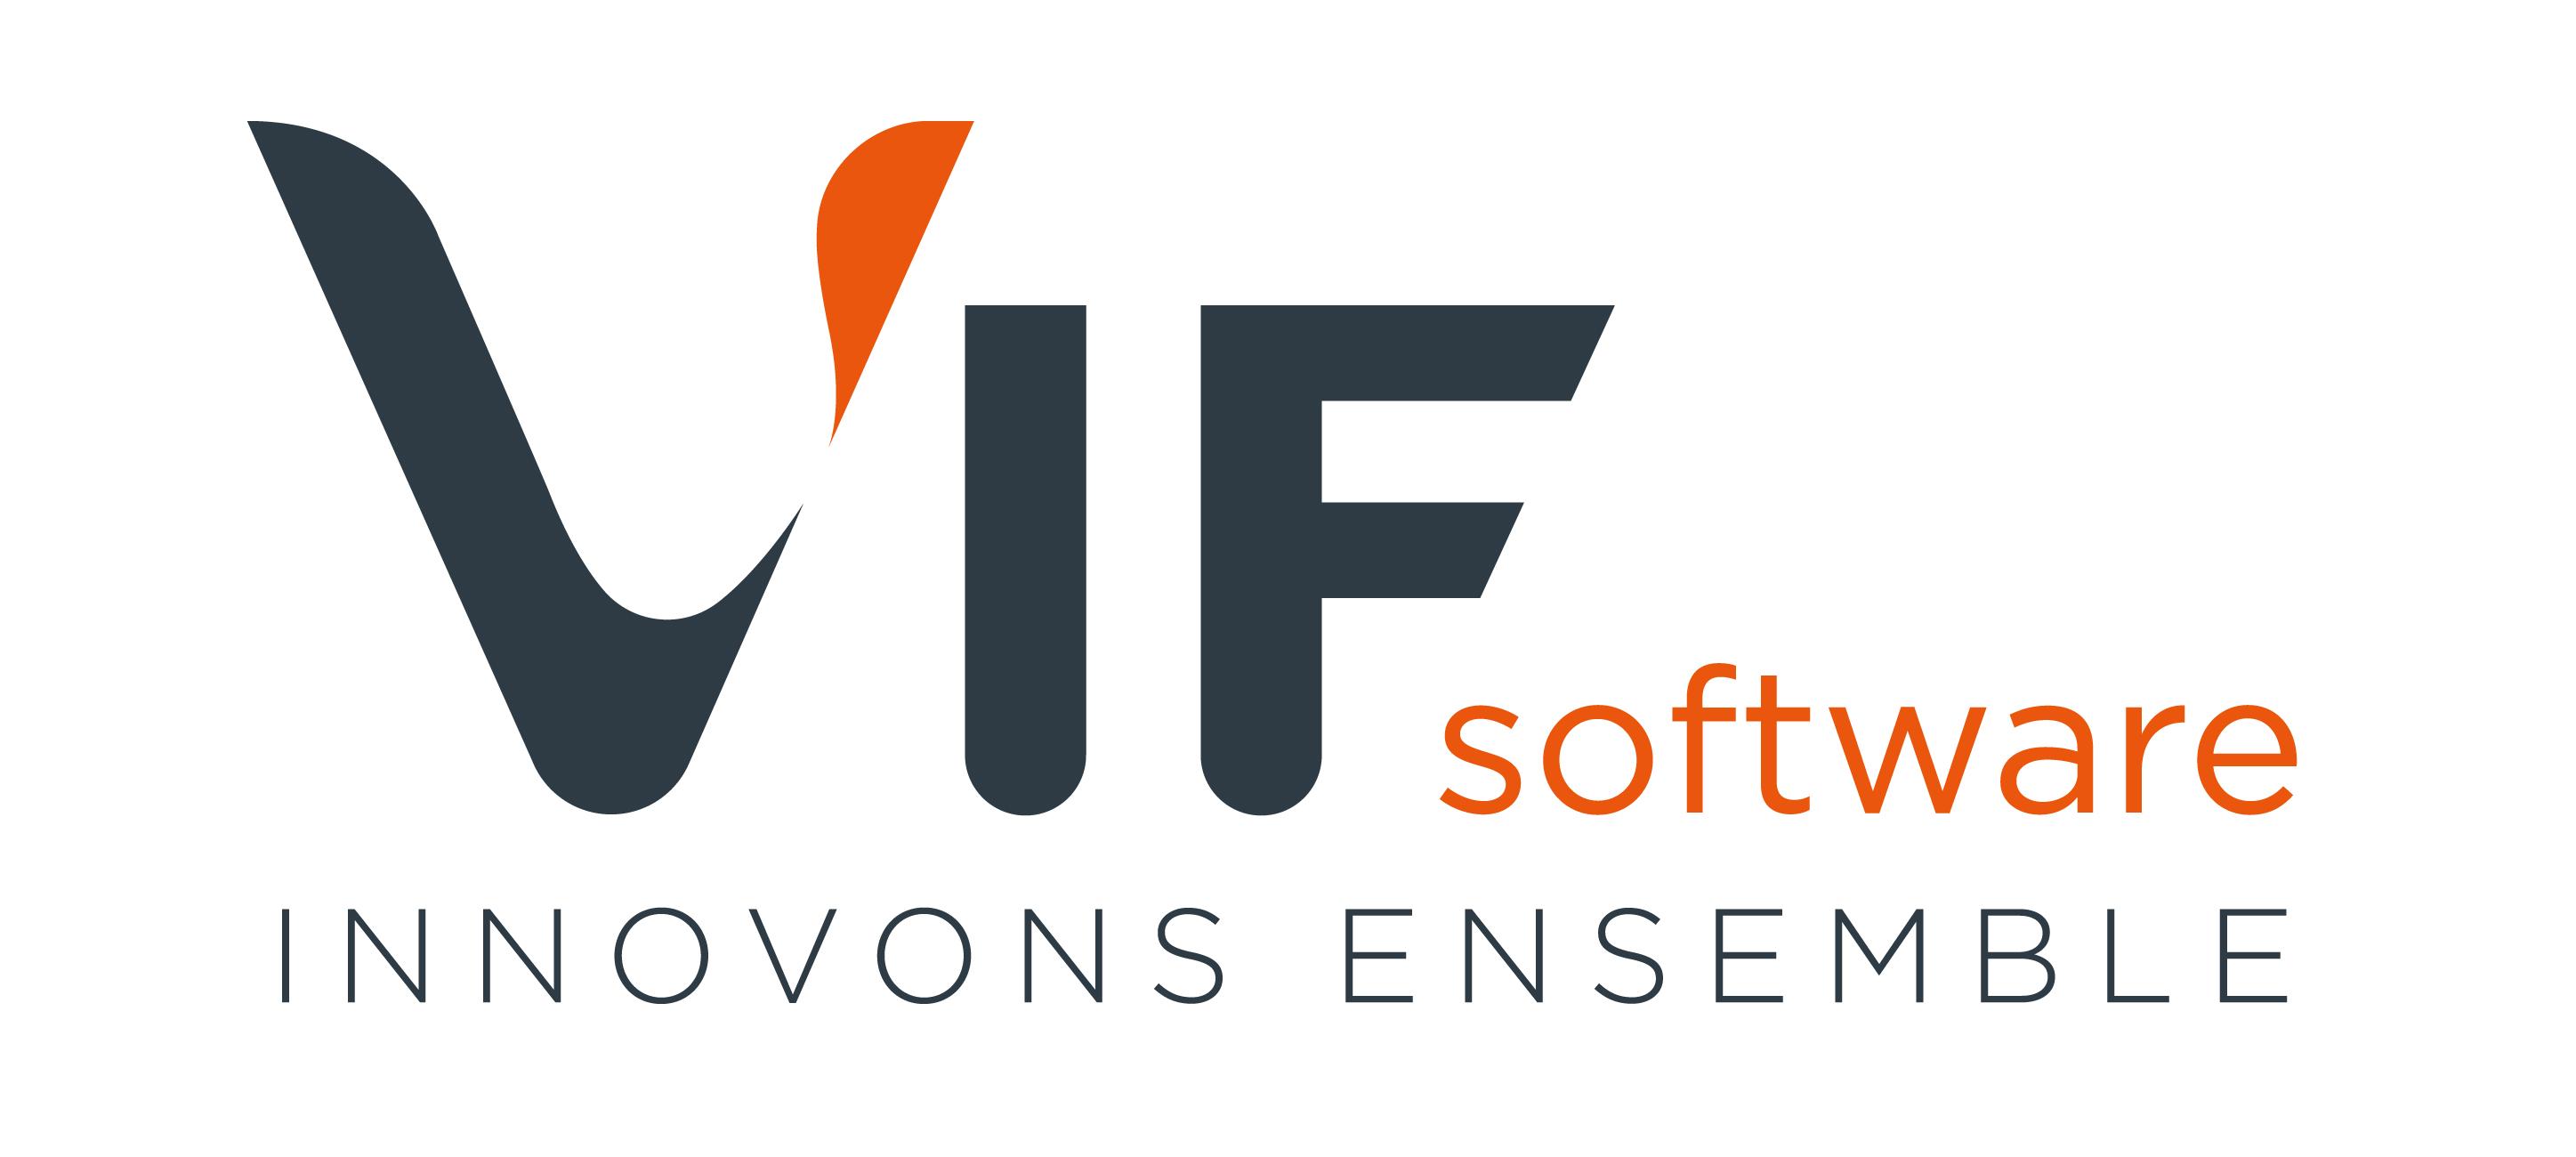 Logo de VIF Software, éditeur et intégrateur de solutions logicielles innovantes - Supply chain Planning, ERP, MES - pour accompagner les PME et ETI industrielles de process dans l’exécution et l’amélioration durable de leur performance opérationnelle.